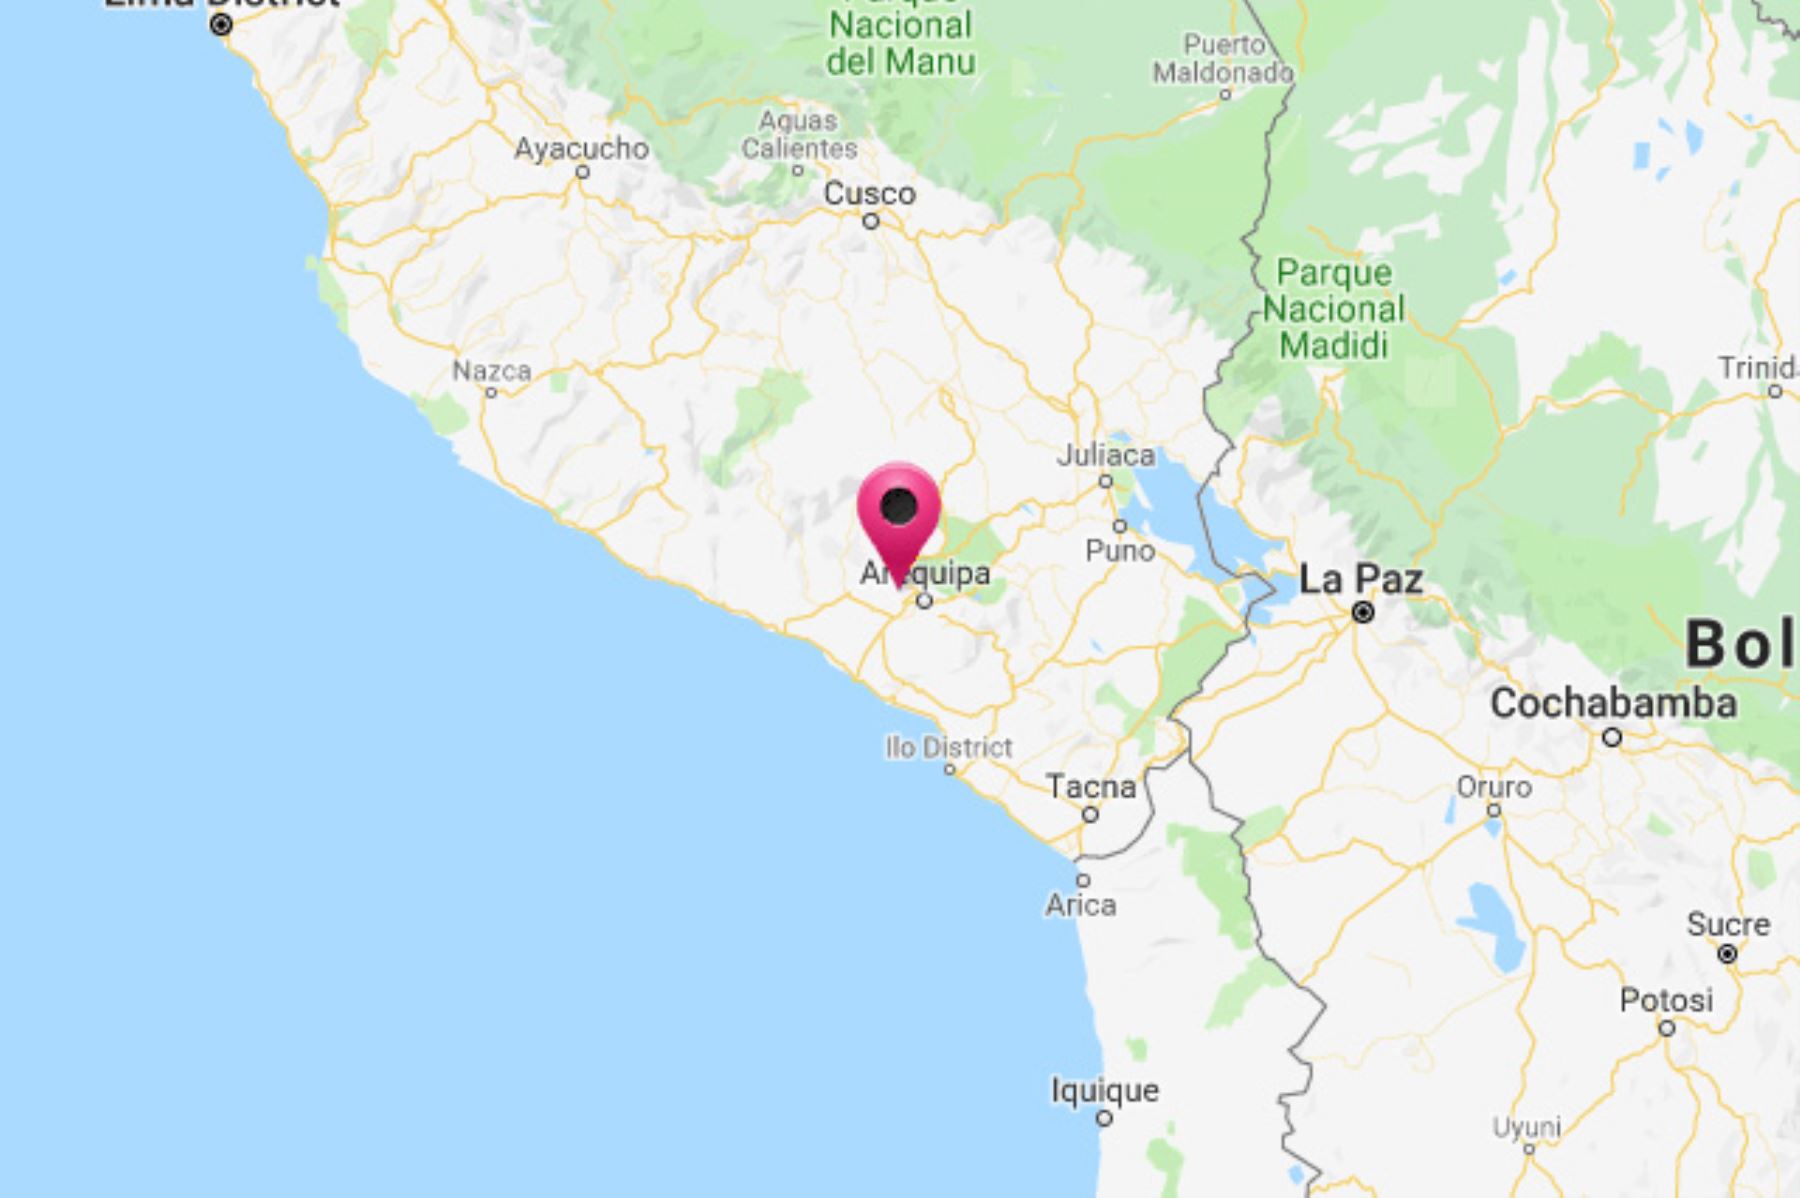 El Instituto Geofísico del Perú reportó esta tarde un sismo de magnitud 4.1 en la región Arequipa.